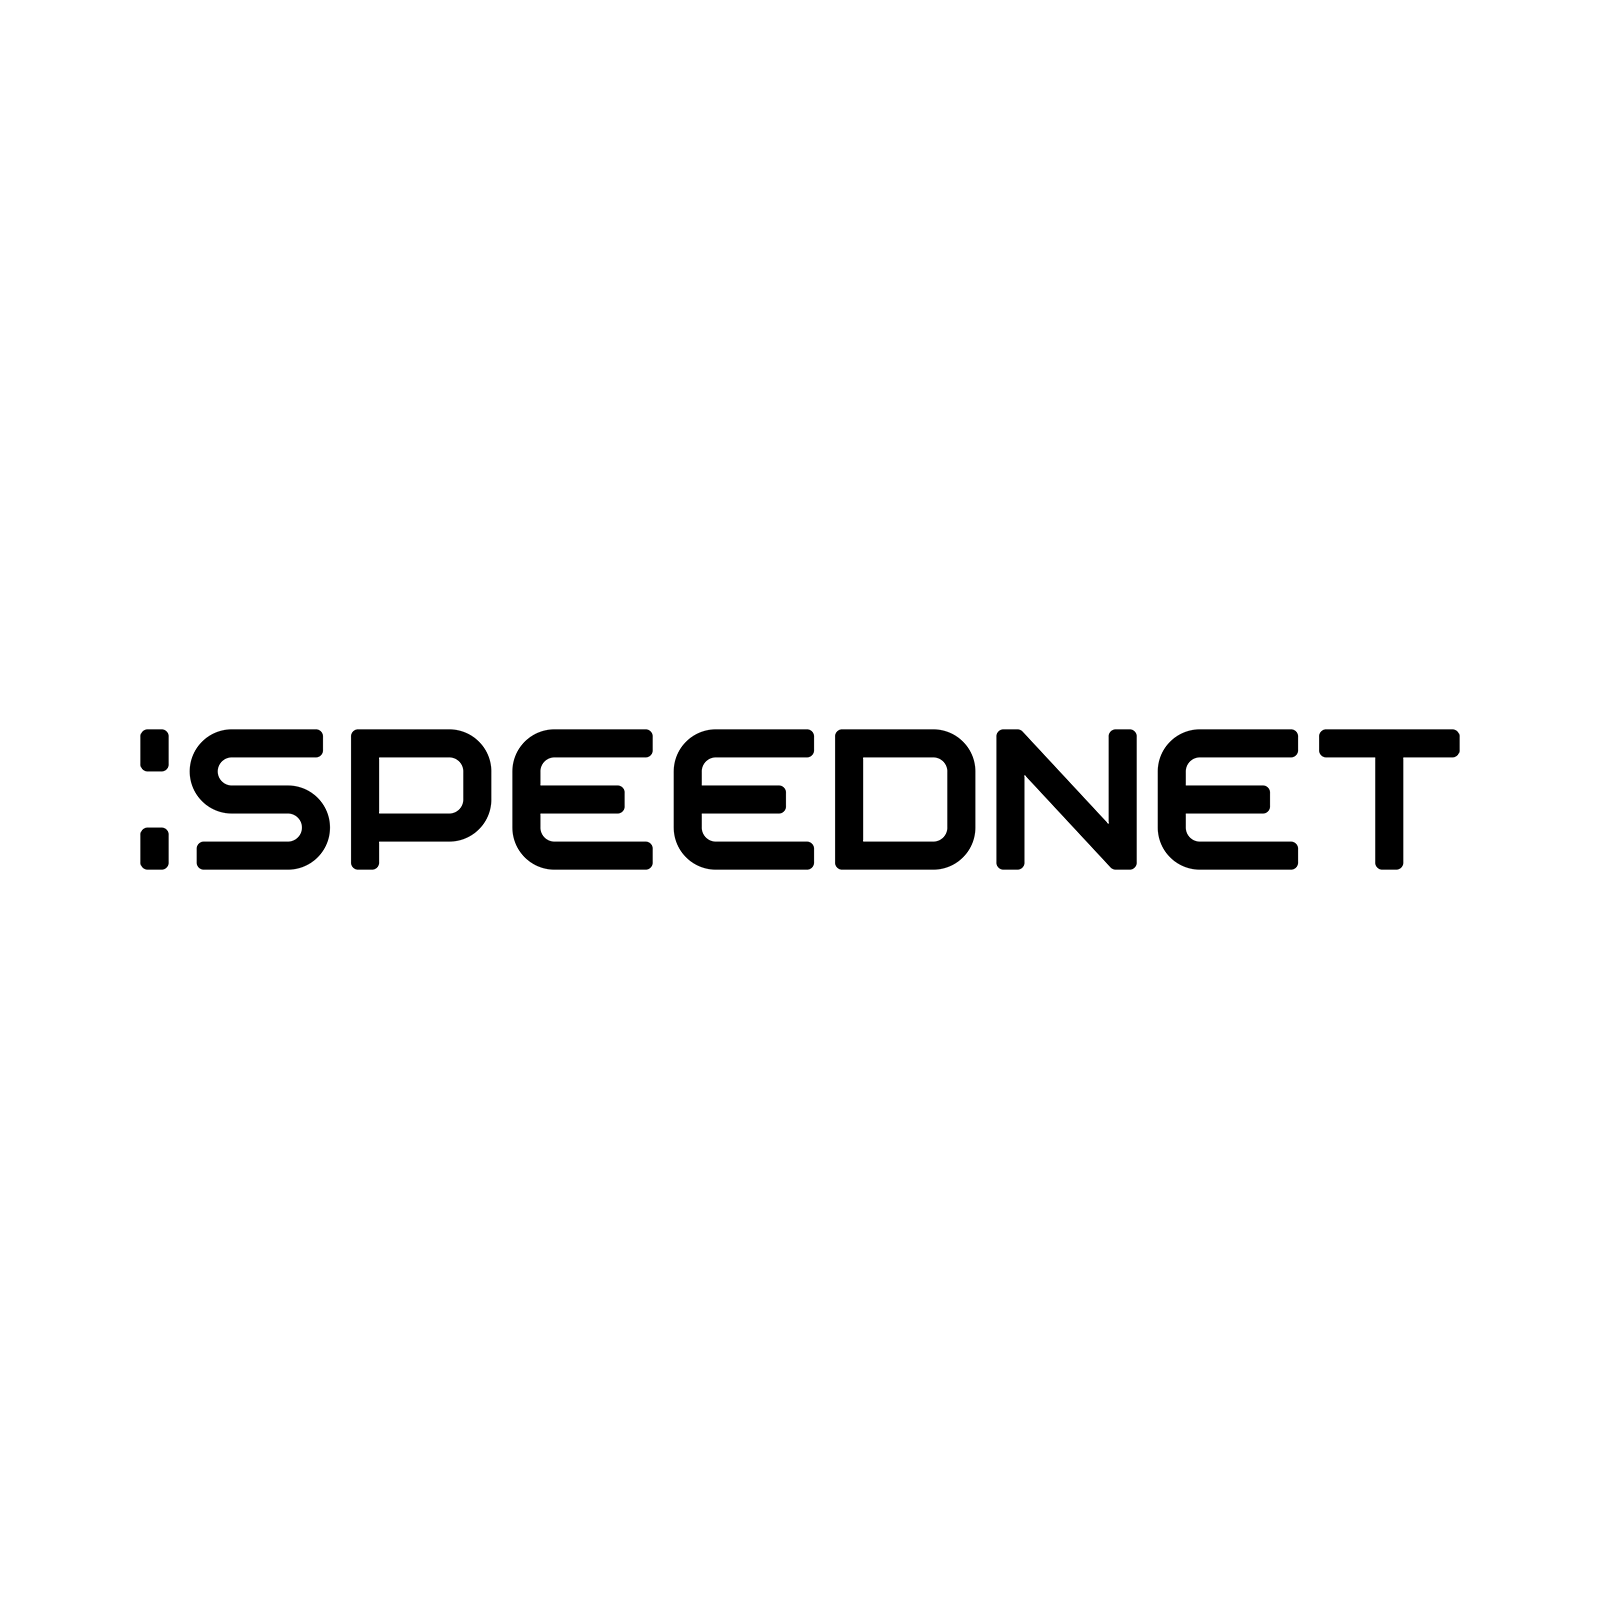 Logo Speednet, kwadrat, białe tło